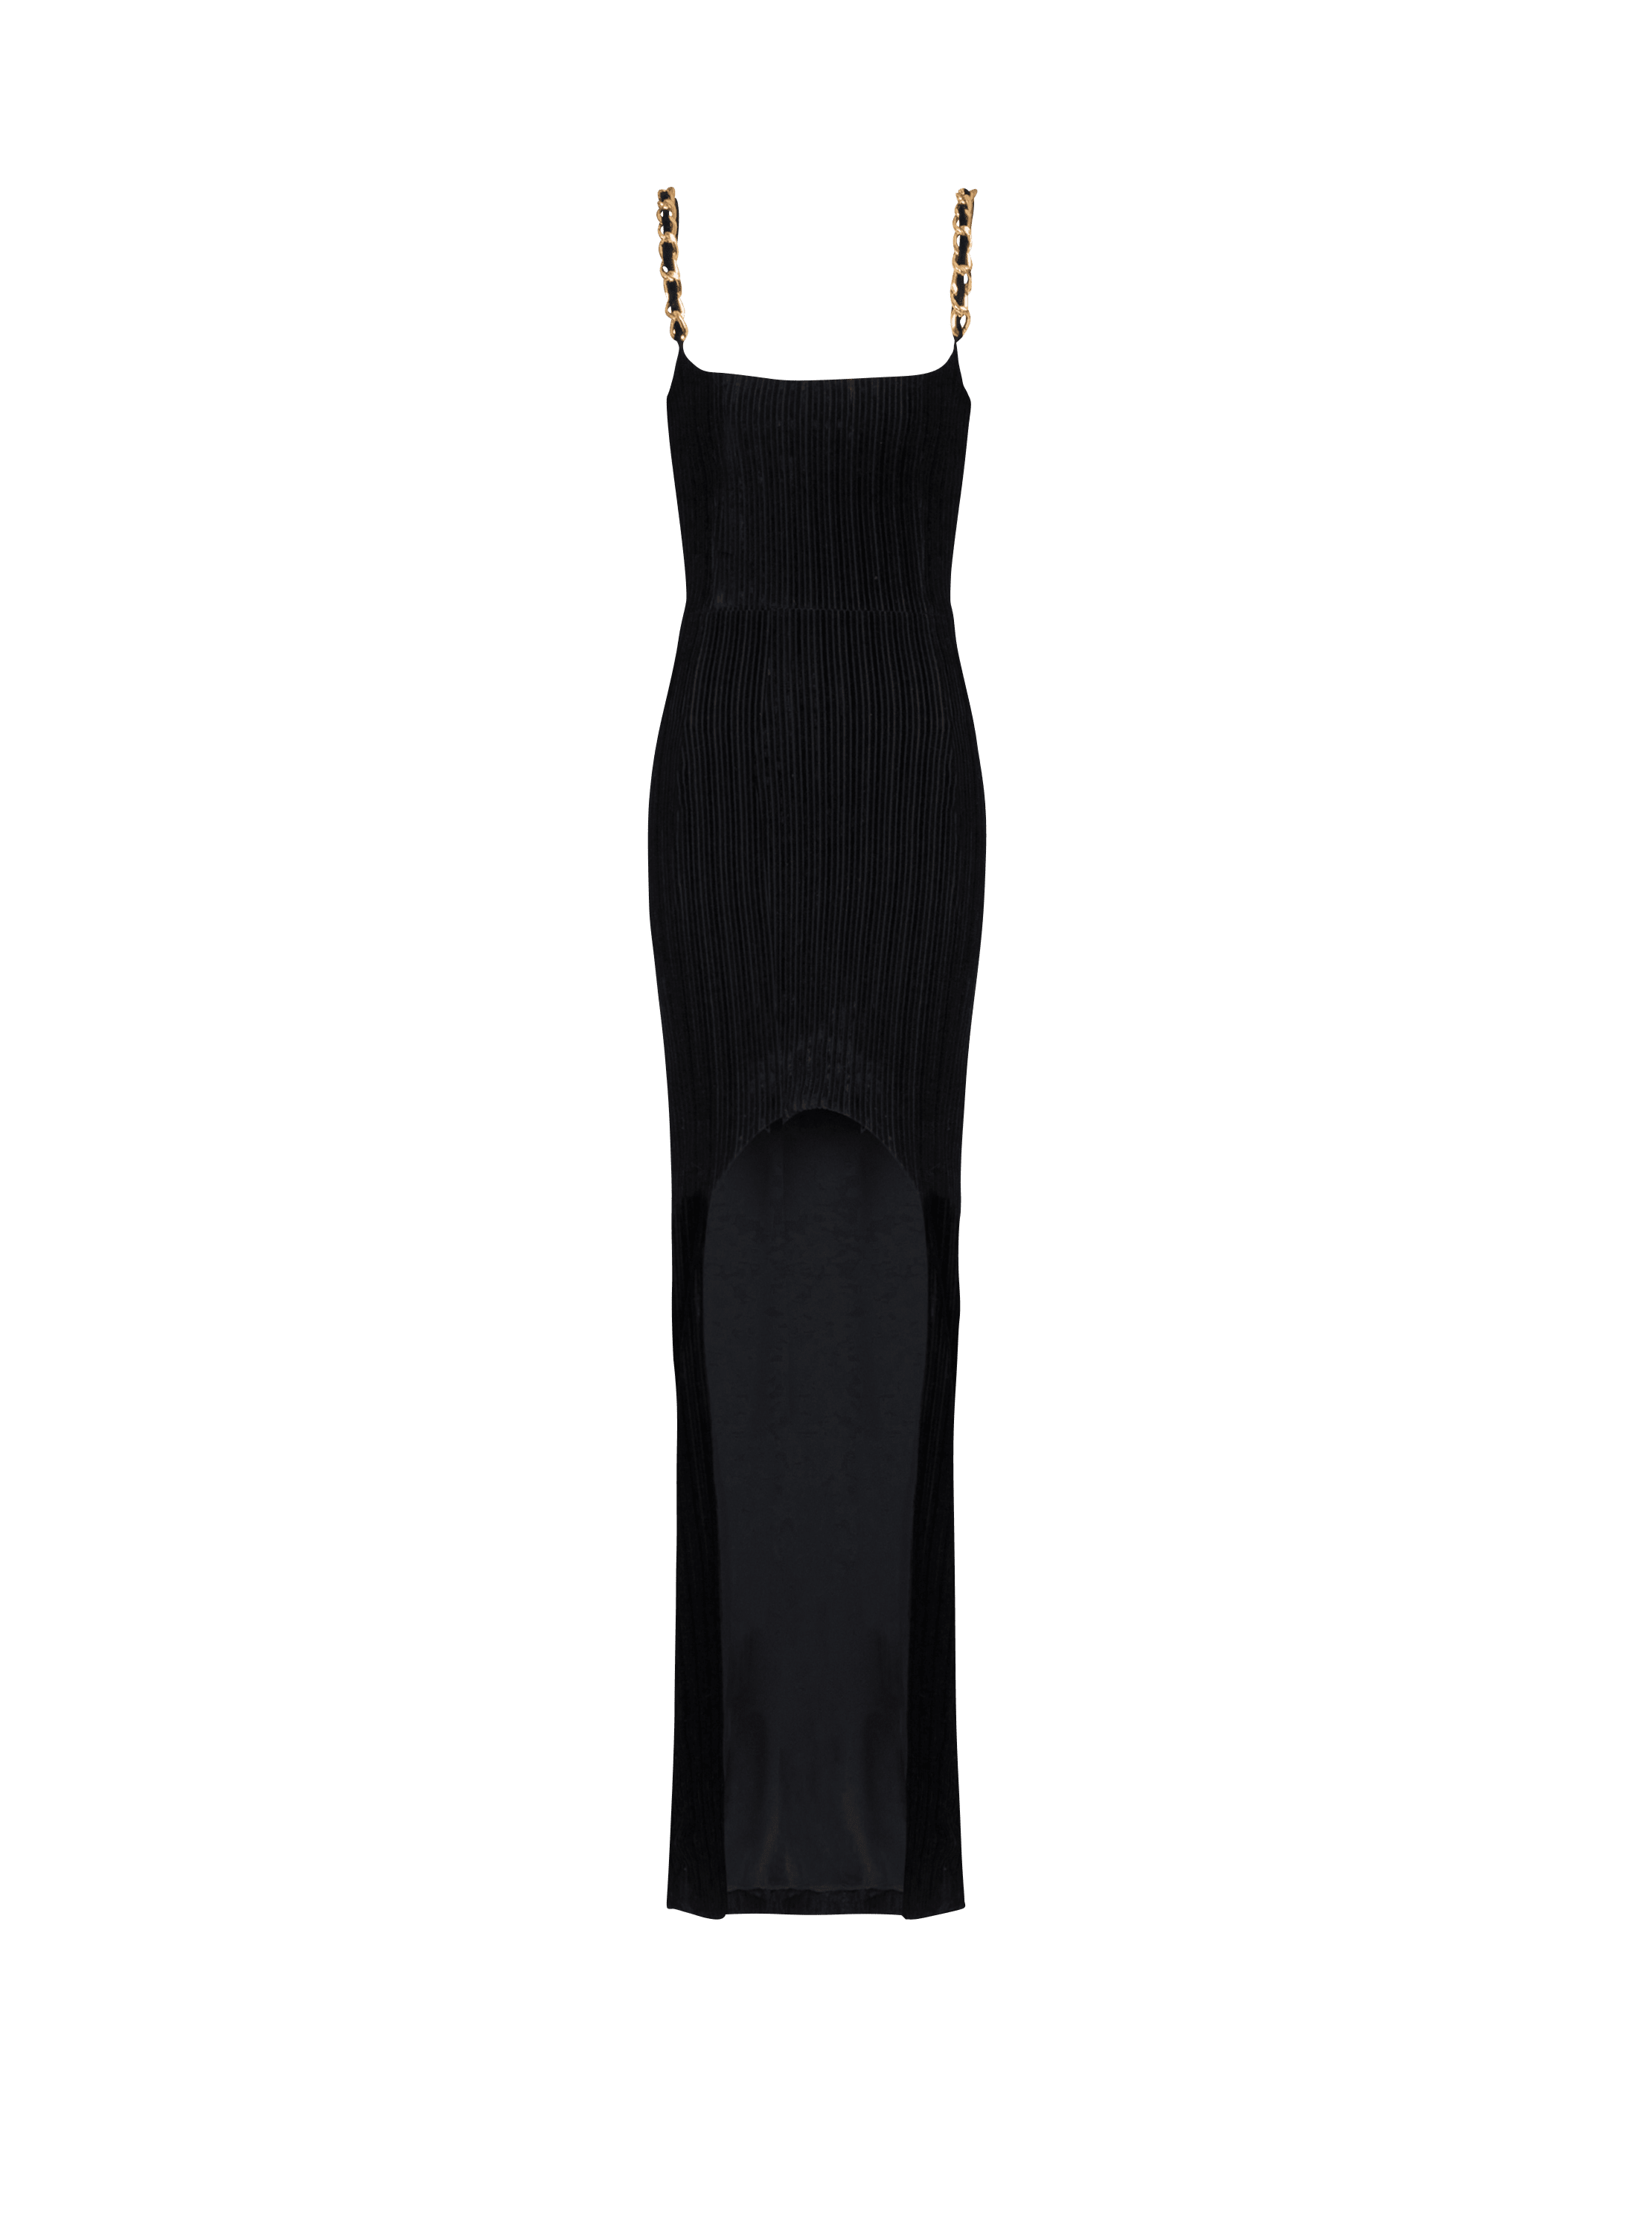 Striped velvet long dress, black, hi-res